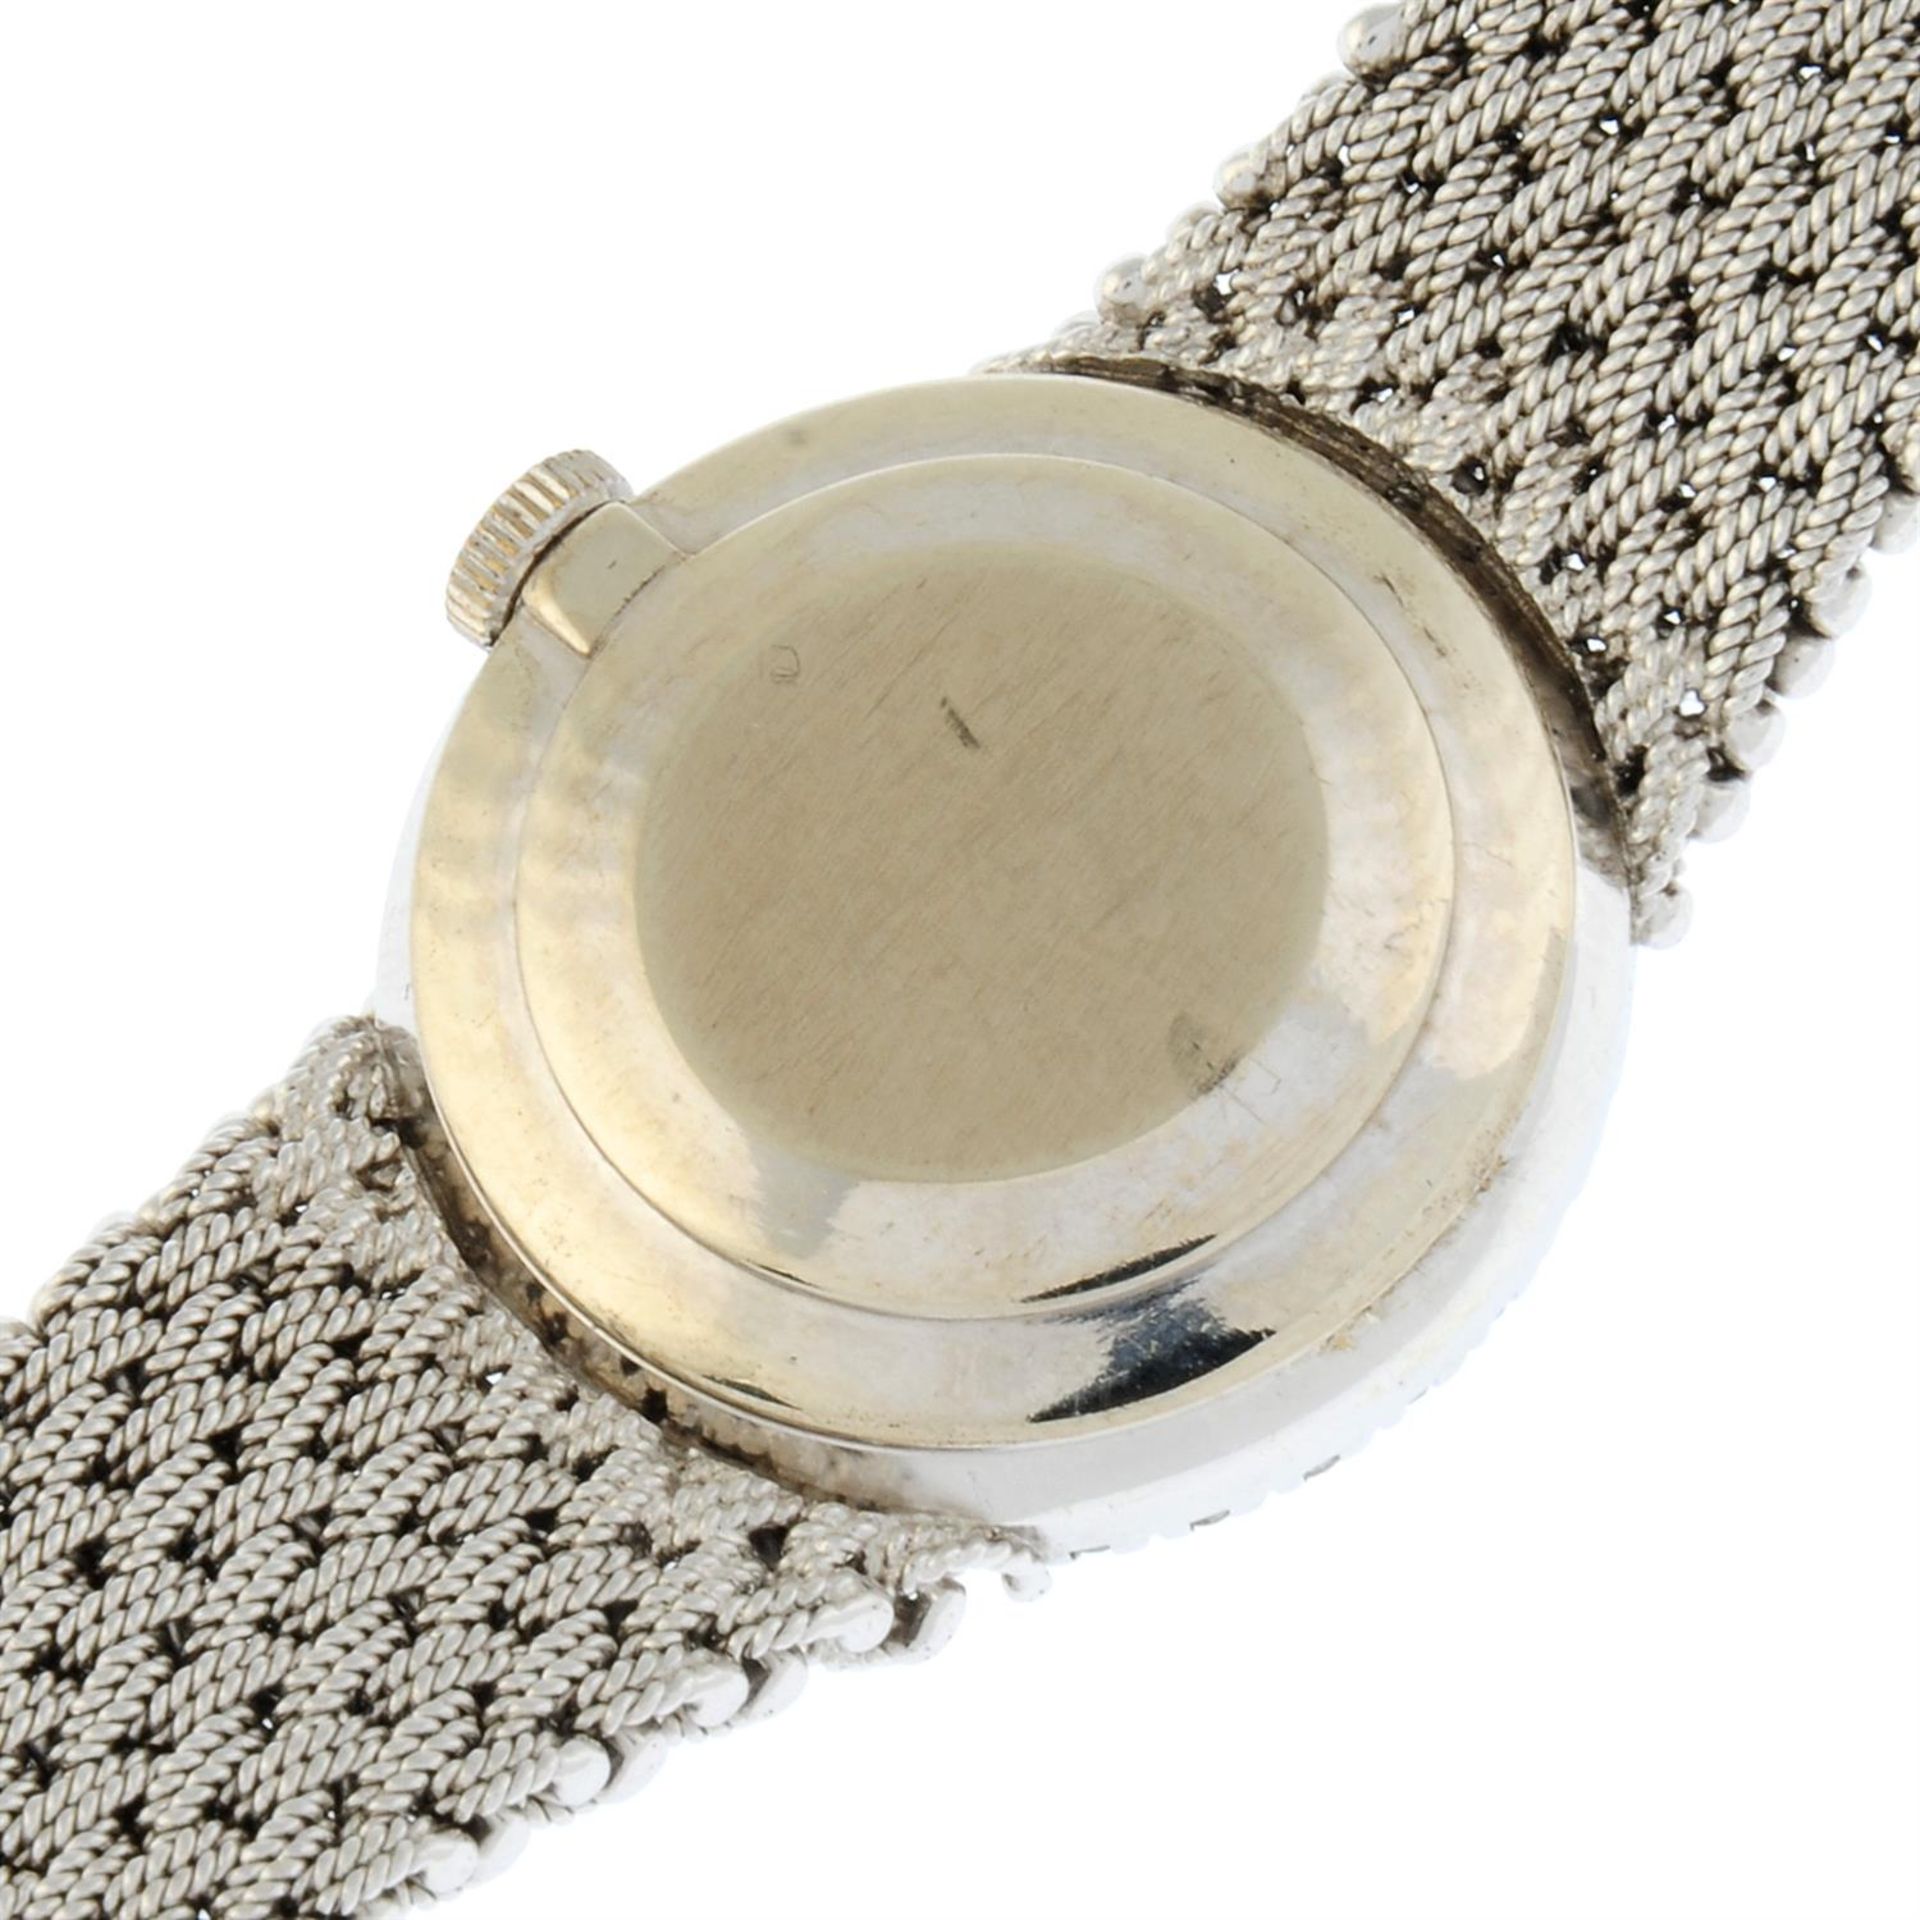 Bueche-Girod - a watch, 24mm. - Bild 4 aus 6